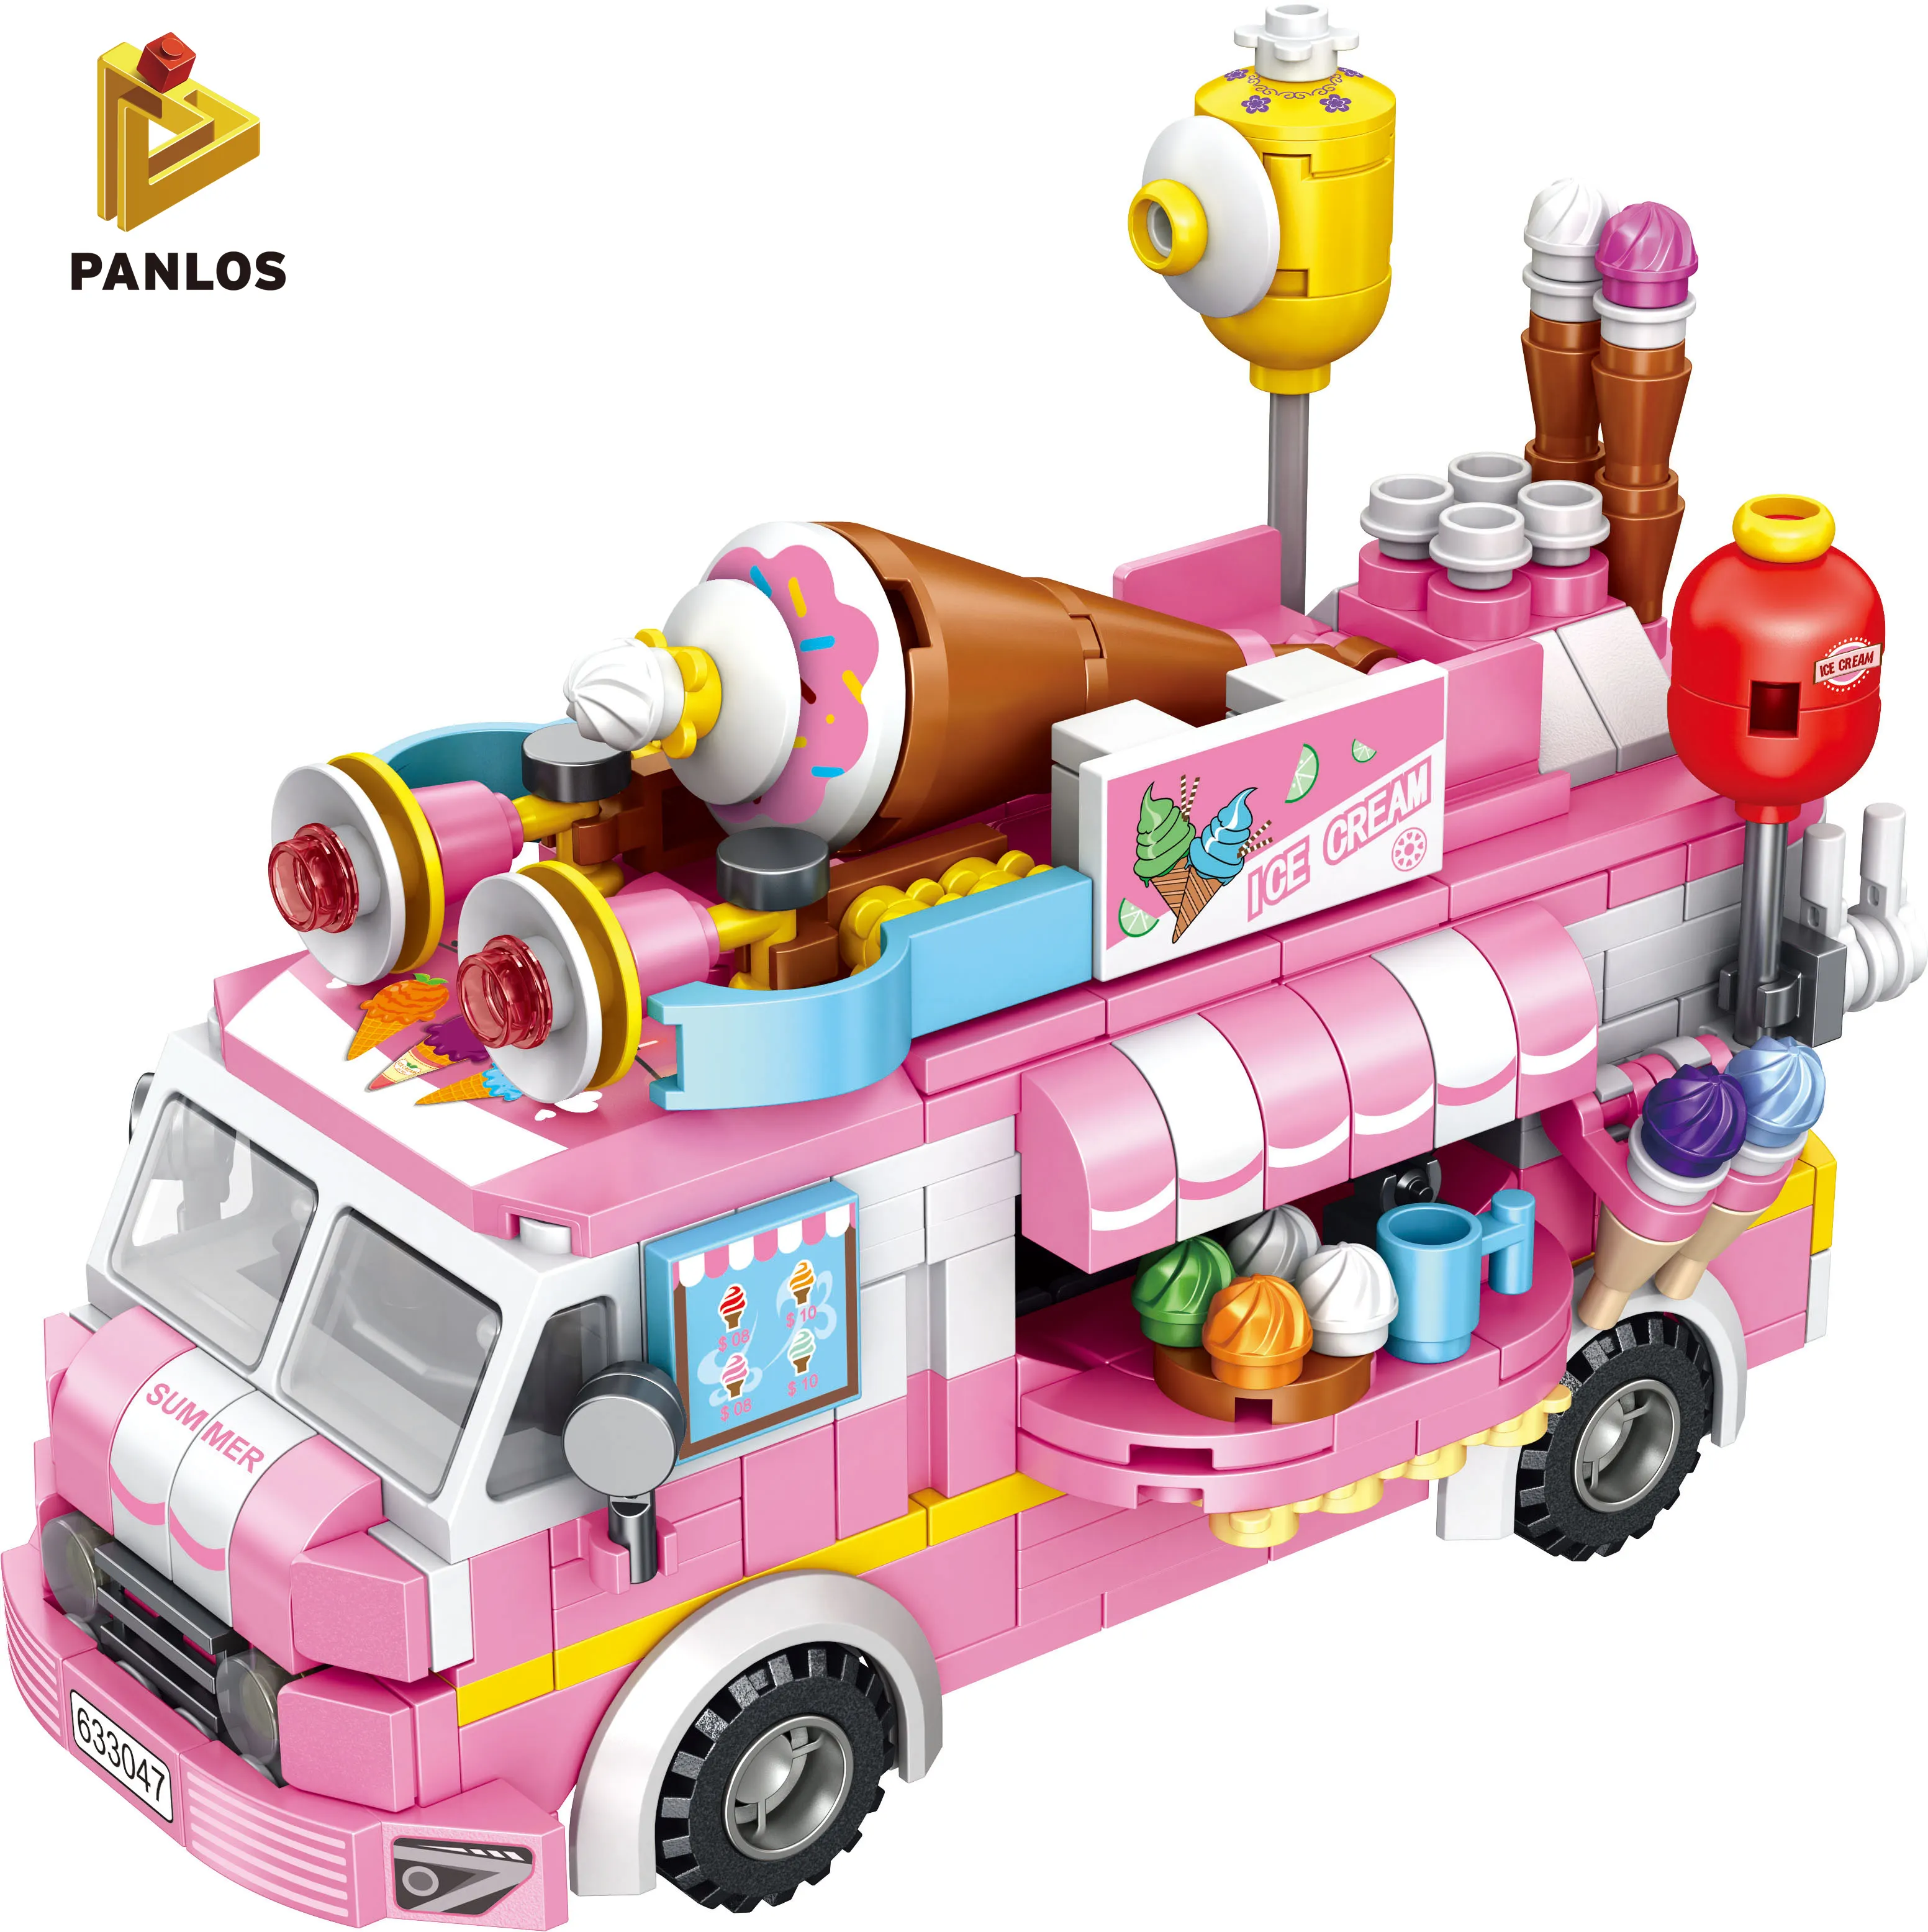 Panlos 633047 sorvete carro bloco de construção de brinquedos para crianças de construção DIY Educacional inteligência Natal verga legoes brinquedos